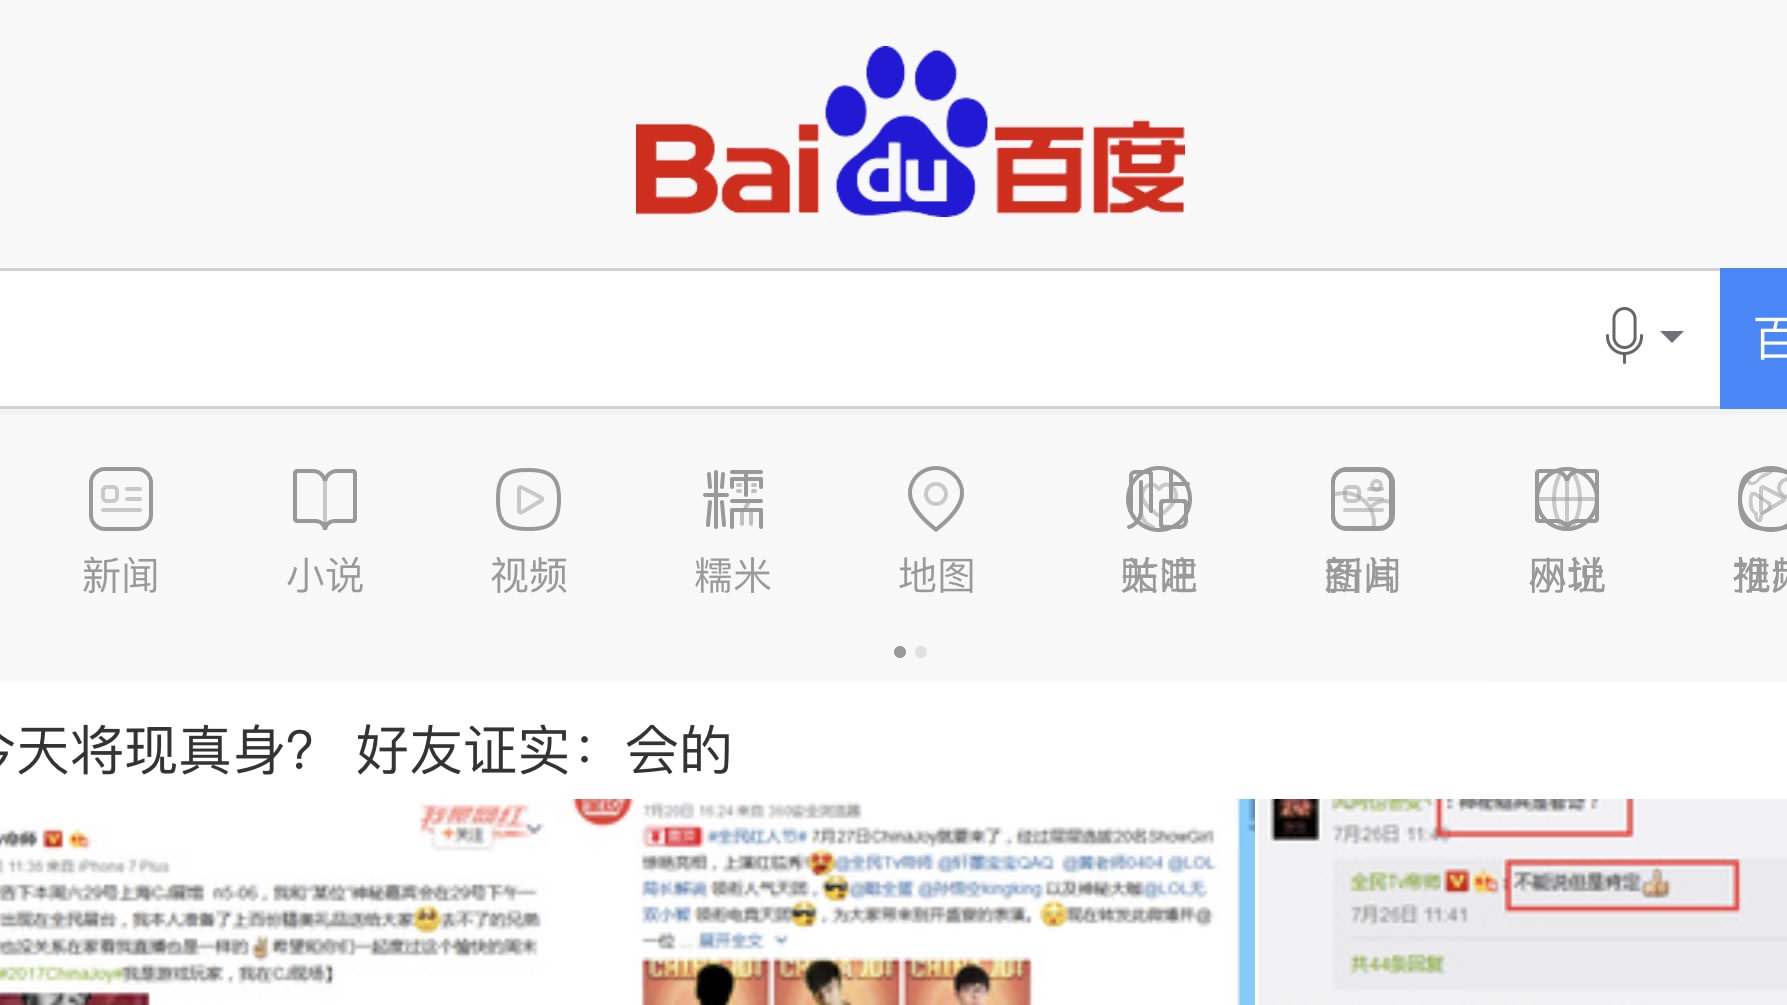 alt="Baidu"